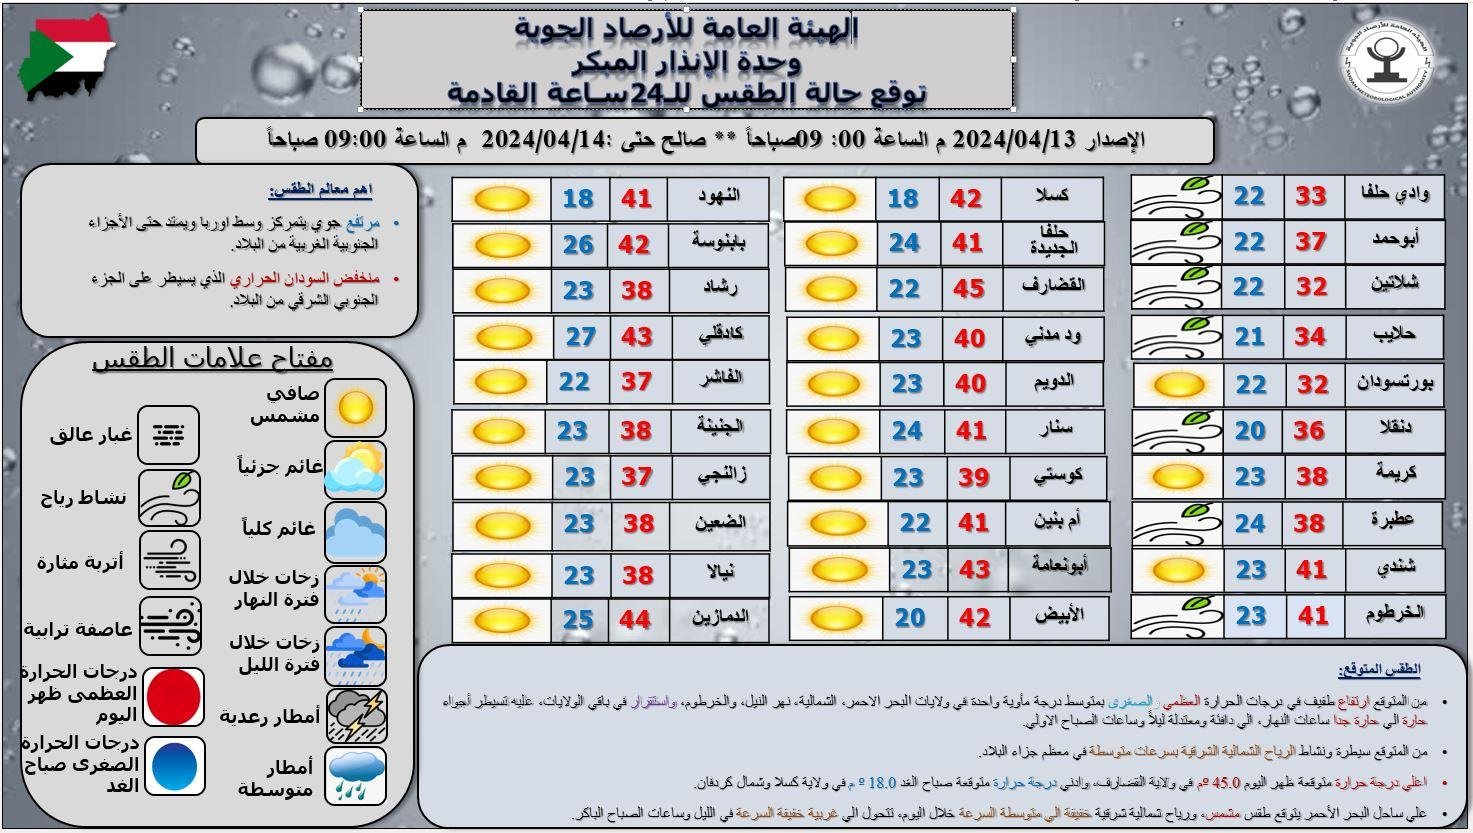 الأرصاد الجوية في السودان تكشف عن ارتفاع درجات الحرارة في هذه الولايات